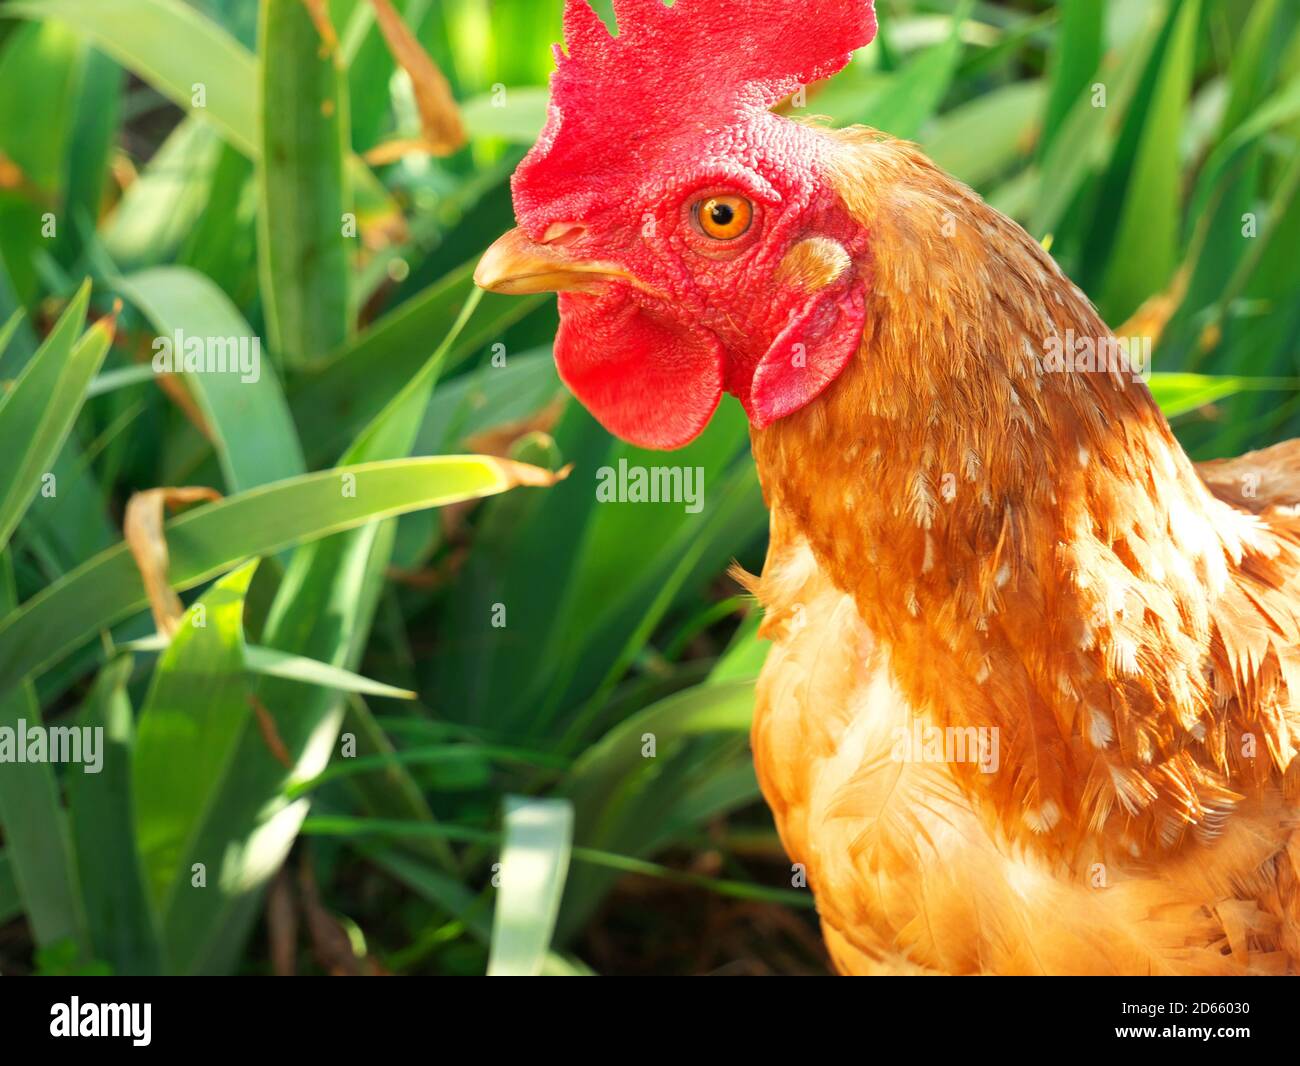 Primo piano sulla testa di una gallina a testa rossa vista dal lato, in natura Foto Stock